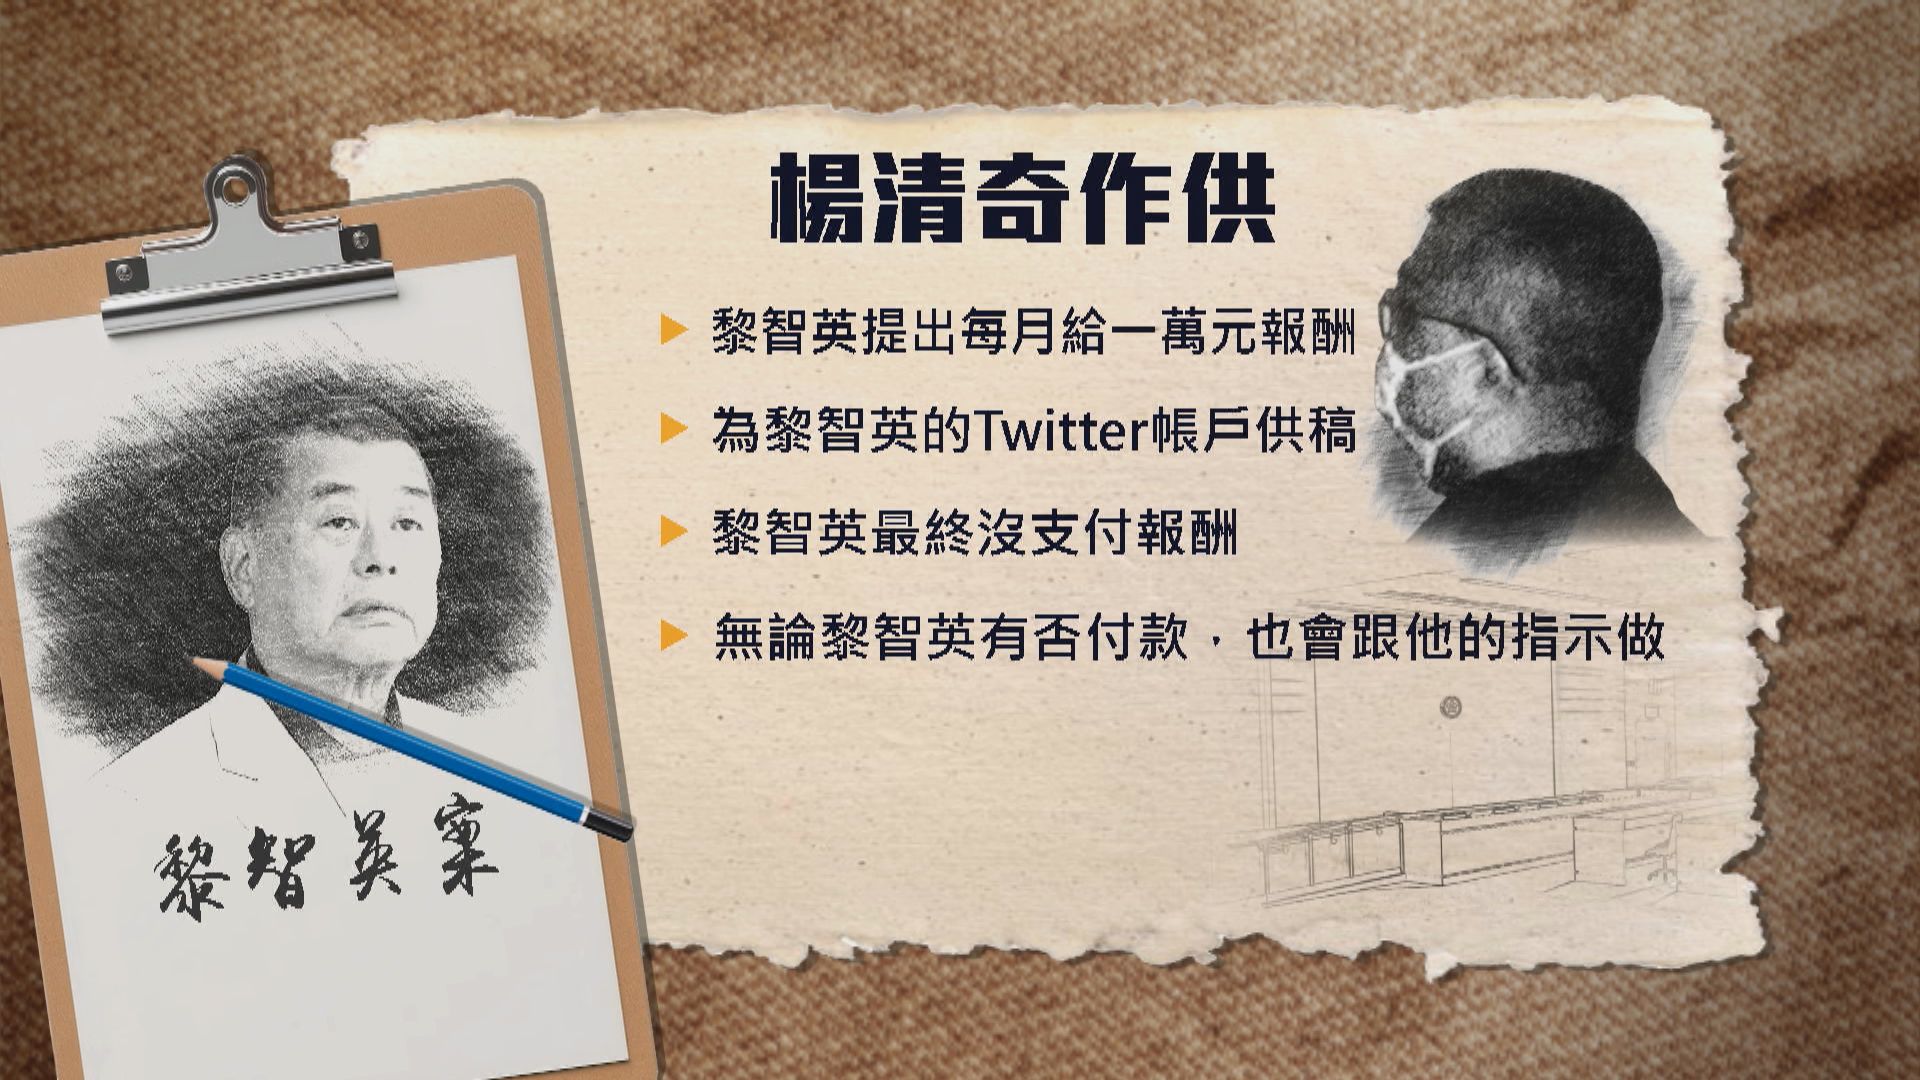 楊清奇收黎智英指示找六四事件新聞供其Twitter發布 需分析中共領導人權鬥